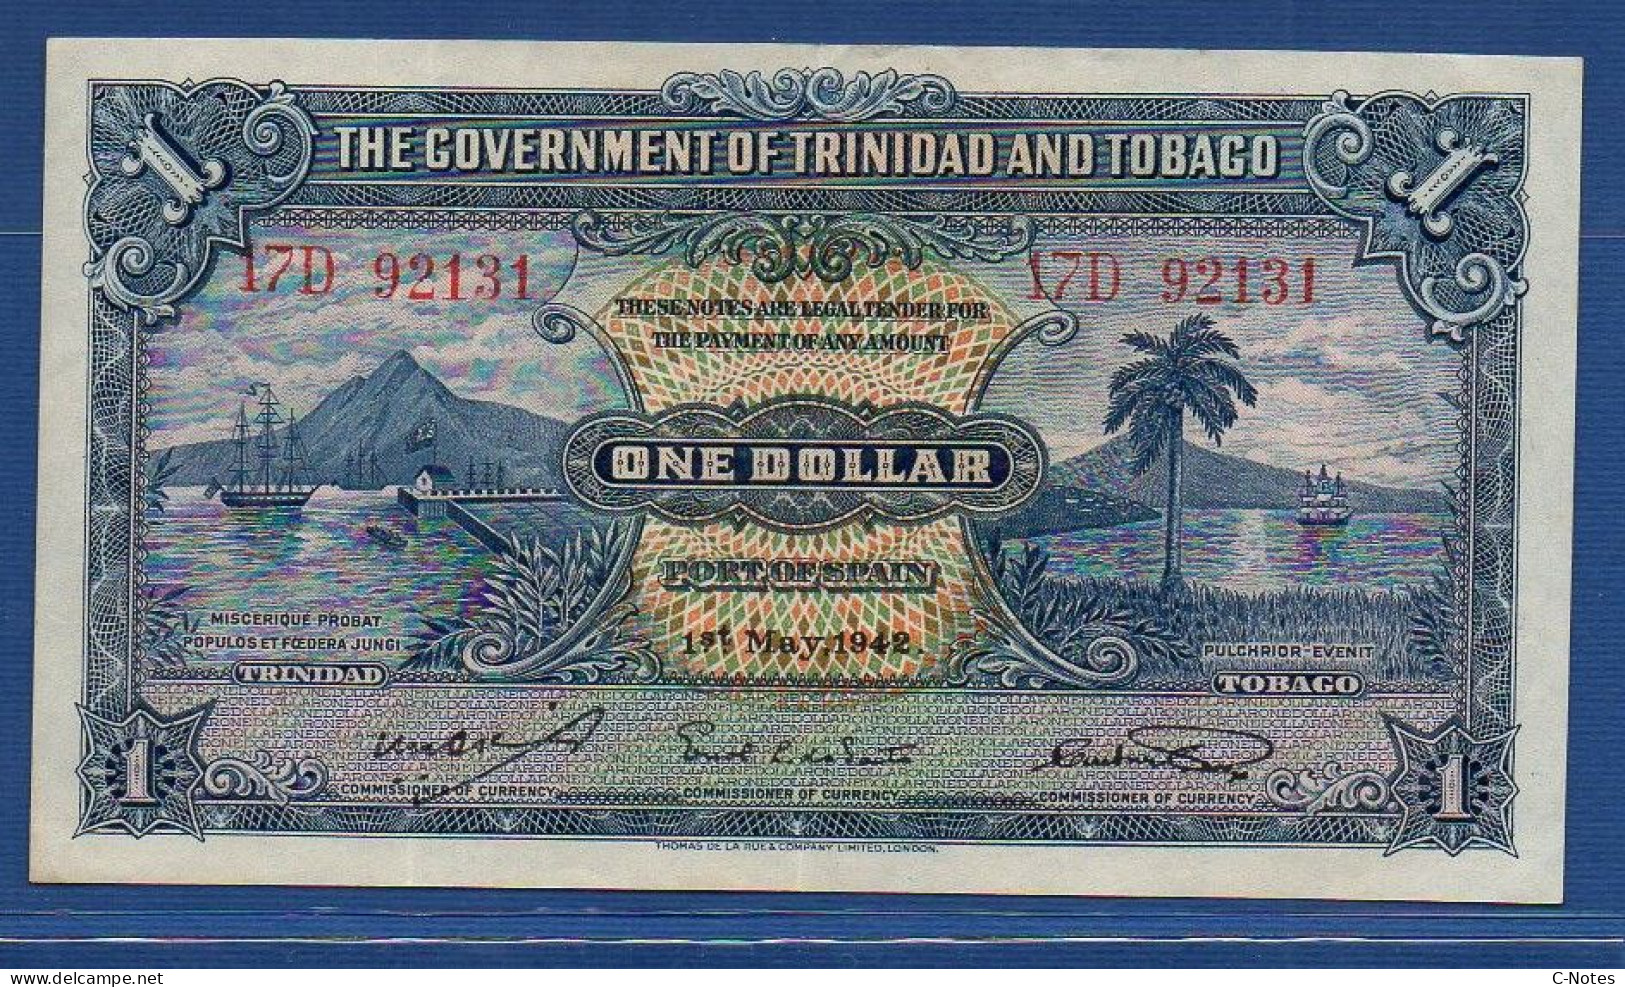 TRINIDAD & TOBAGO - P. 5c – 1 Dollar 01.05.1942 VF/XF, S/n 17D 92131 - Trinidad & Tobago